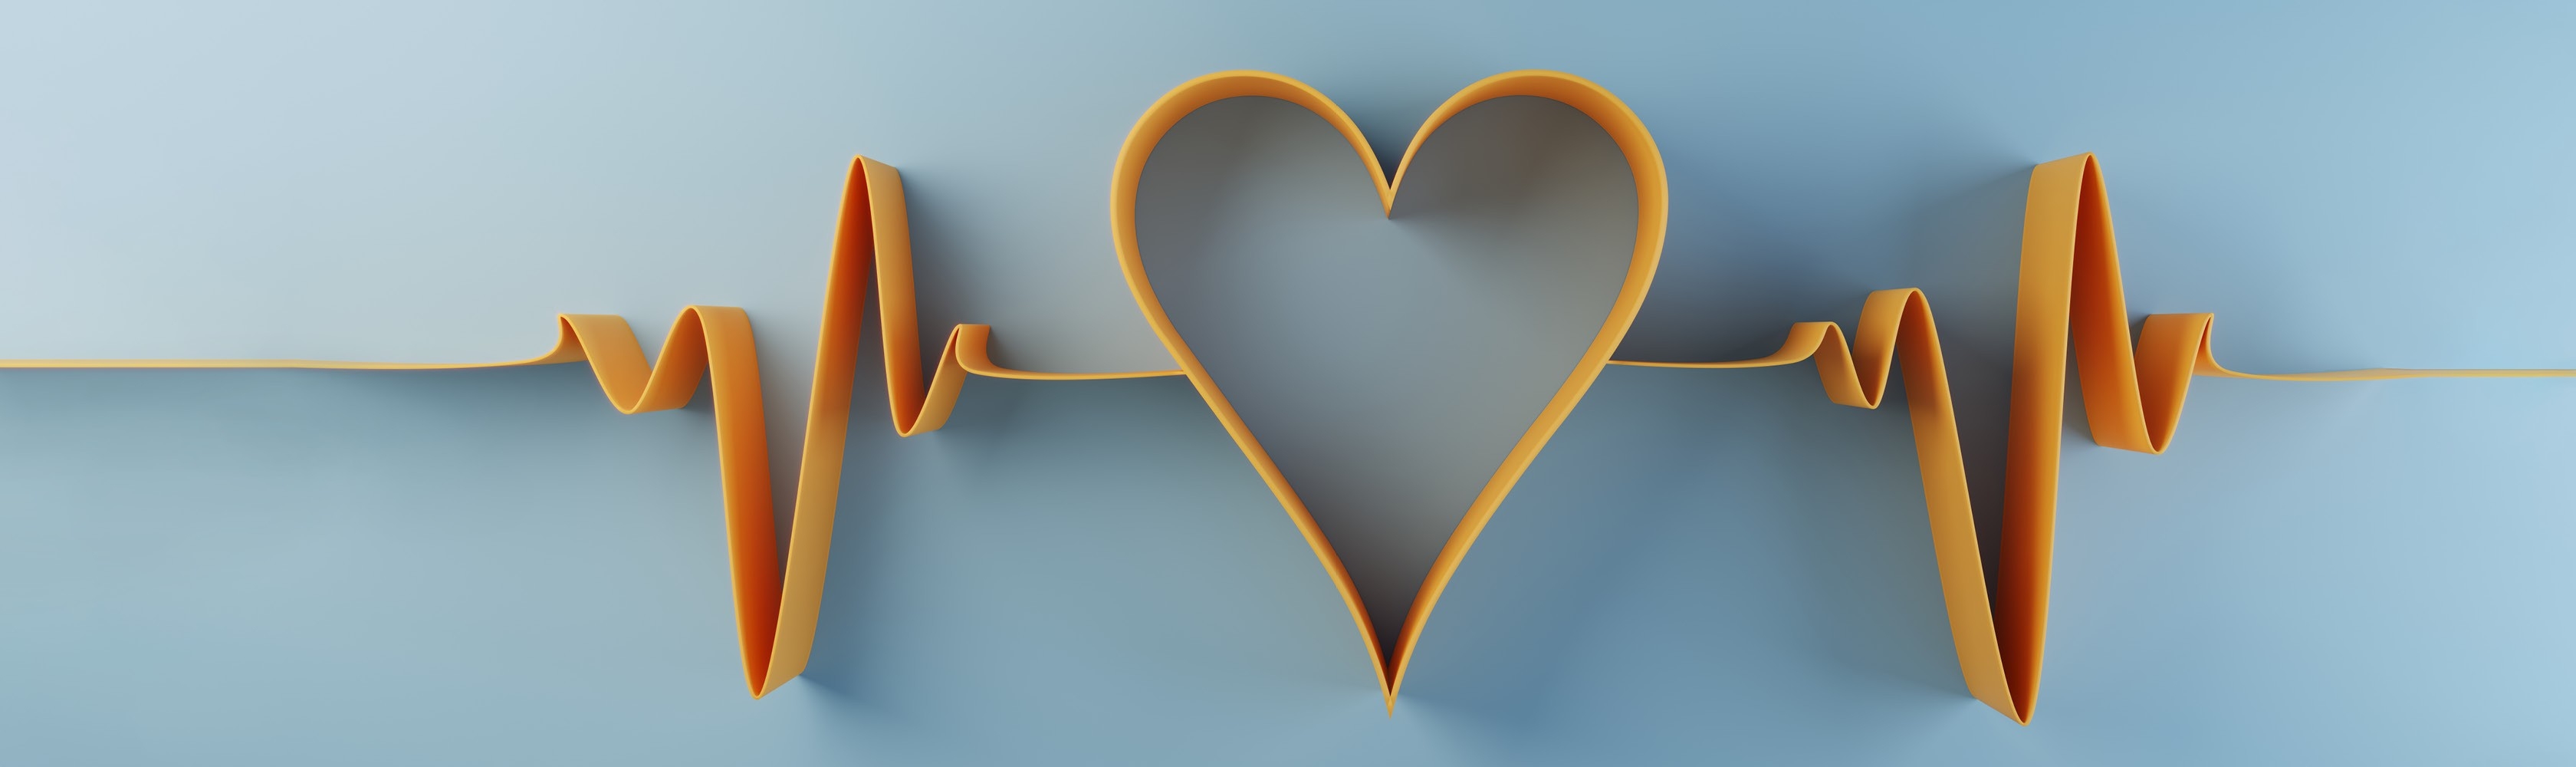 Ritmo cardiaco simbolico su sfondo azzurro con un cuore al centro. 